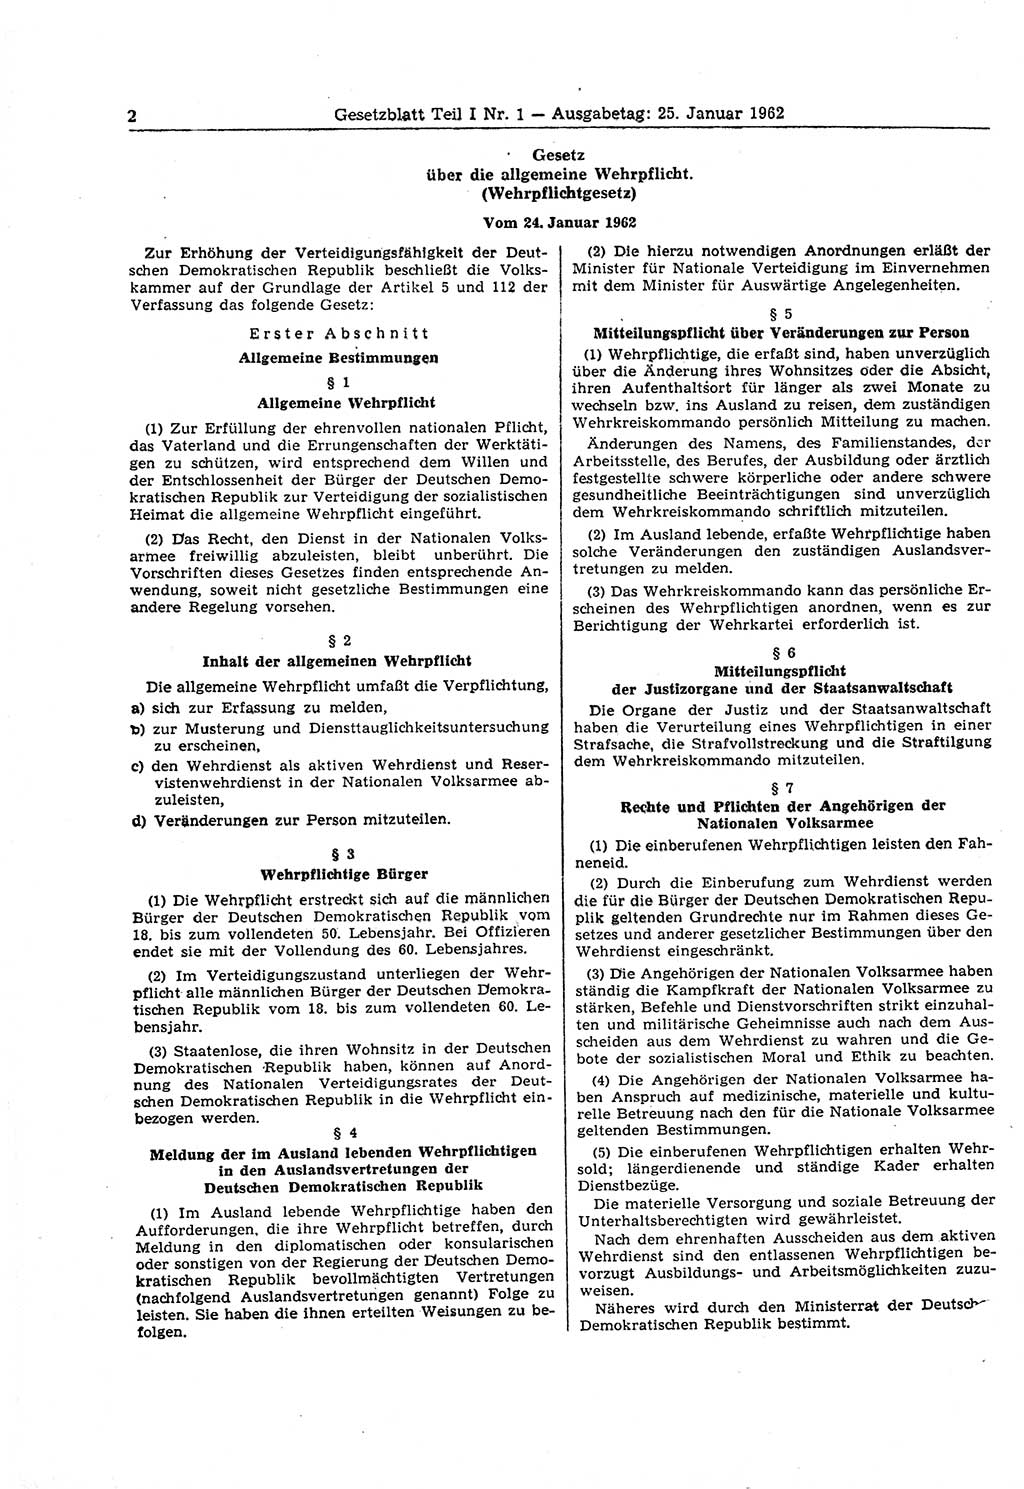 Gesetzblatt (GBl.) der Deutschen Demokratischen Republik (DDR) Teil Ⅰ 1962, Seite 2 (GBl. DDR Ⅰ 1962, S. 2)